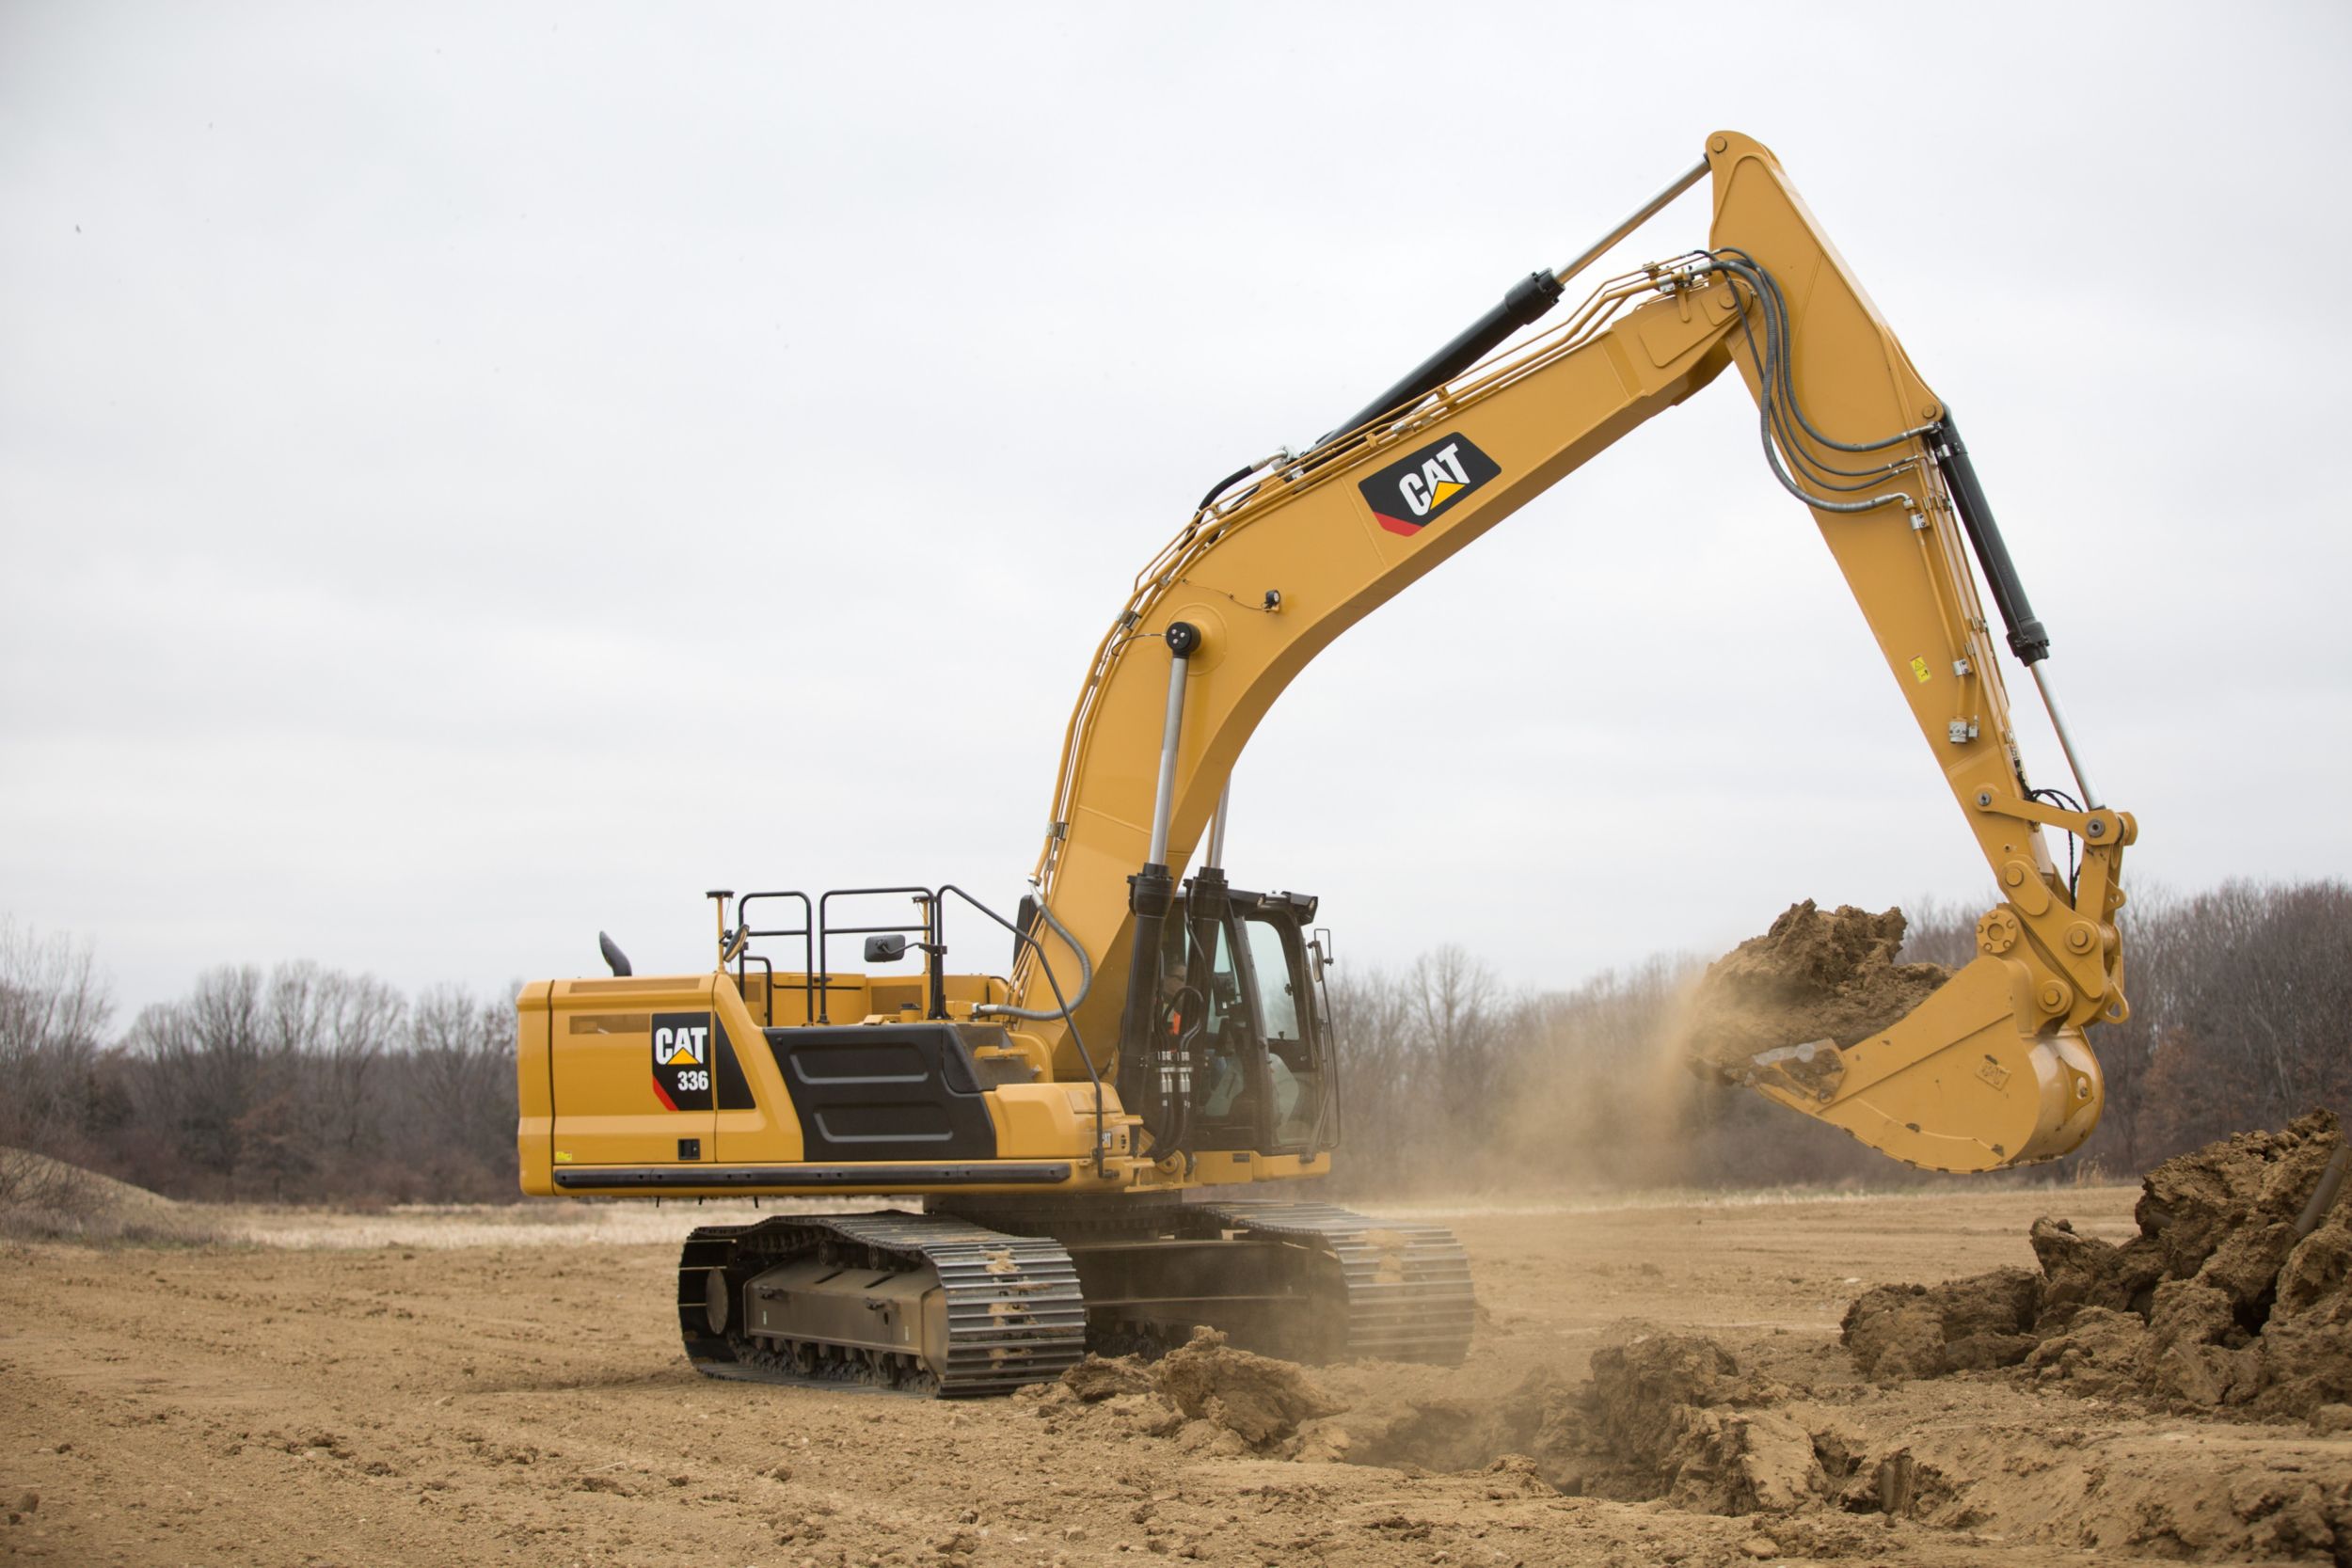 336 Hydraulic Excavator Cat Caterpillar